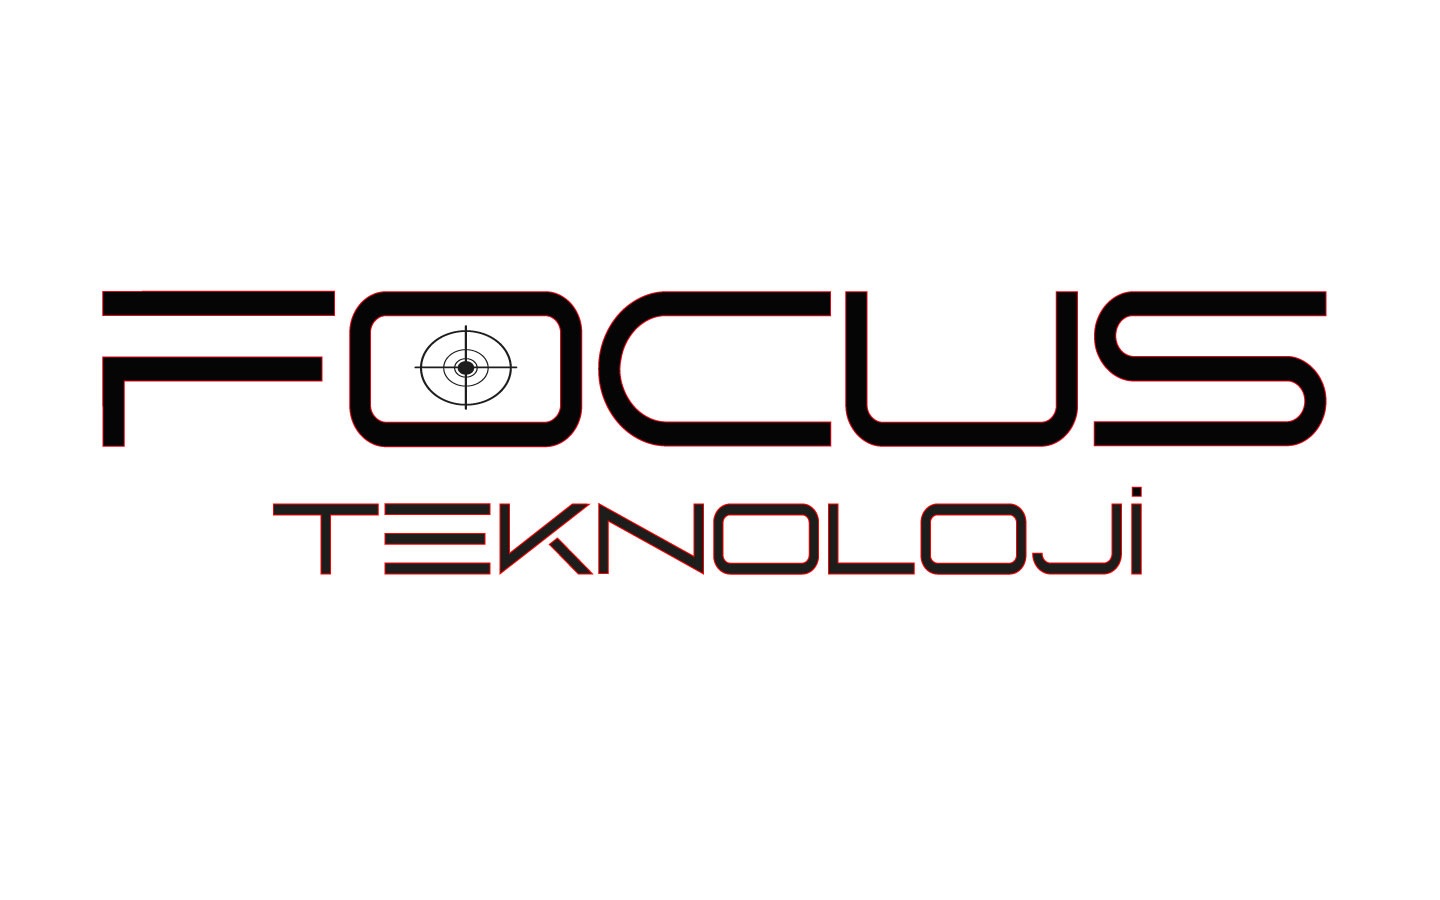 Focus Teknoloji